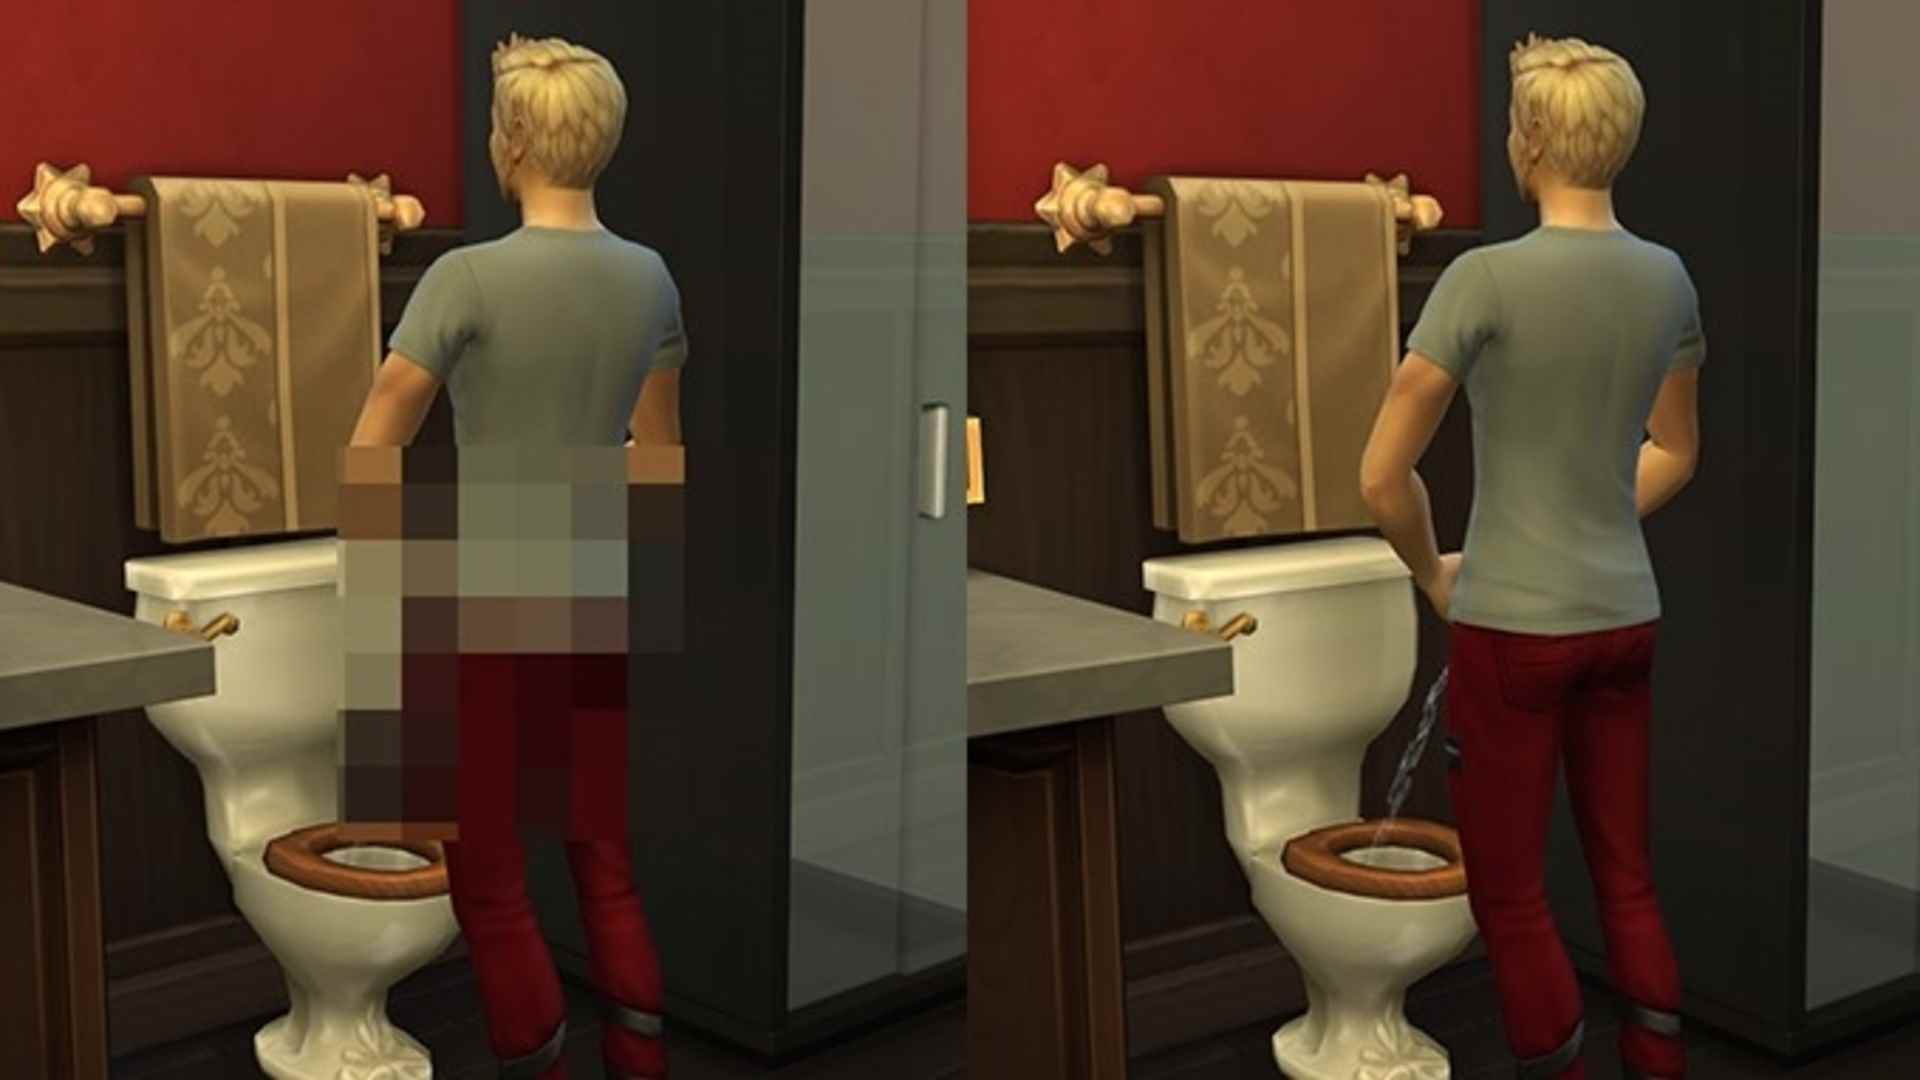 Sims 4 seks modu Crystal Clear, Sansürsüz'den aynı adamın biri sansürsüz tuvalete işediğini gösteren bölünmüş bir görüntü